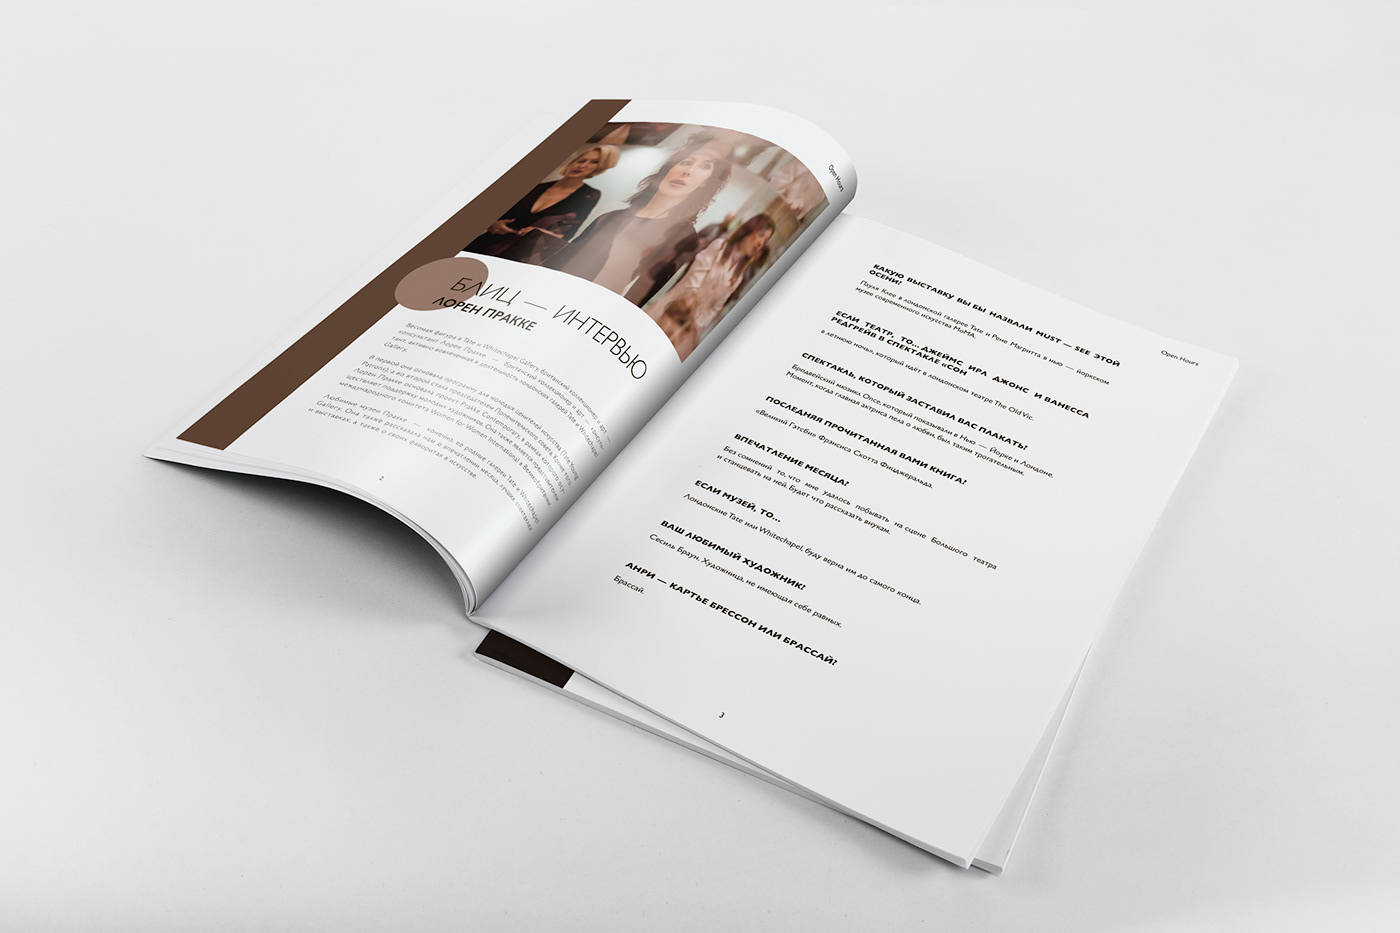 Adobe InDesign book cover design InDesign magazine Magazine design